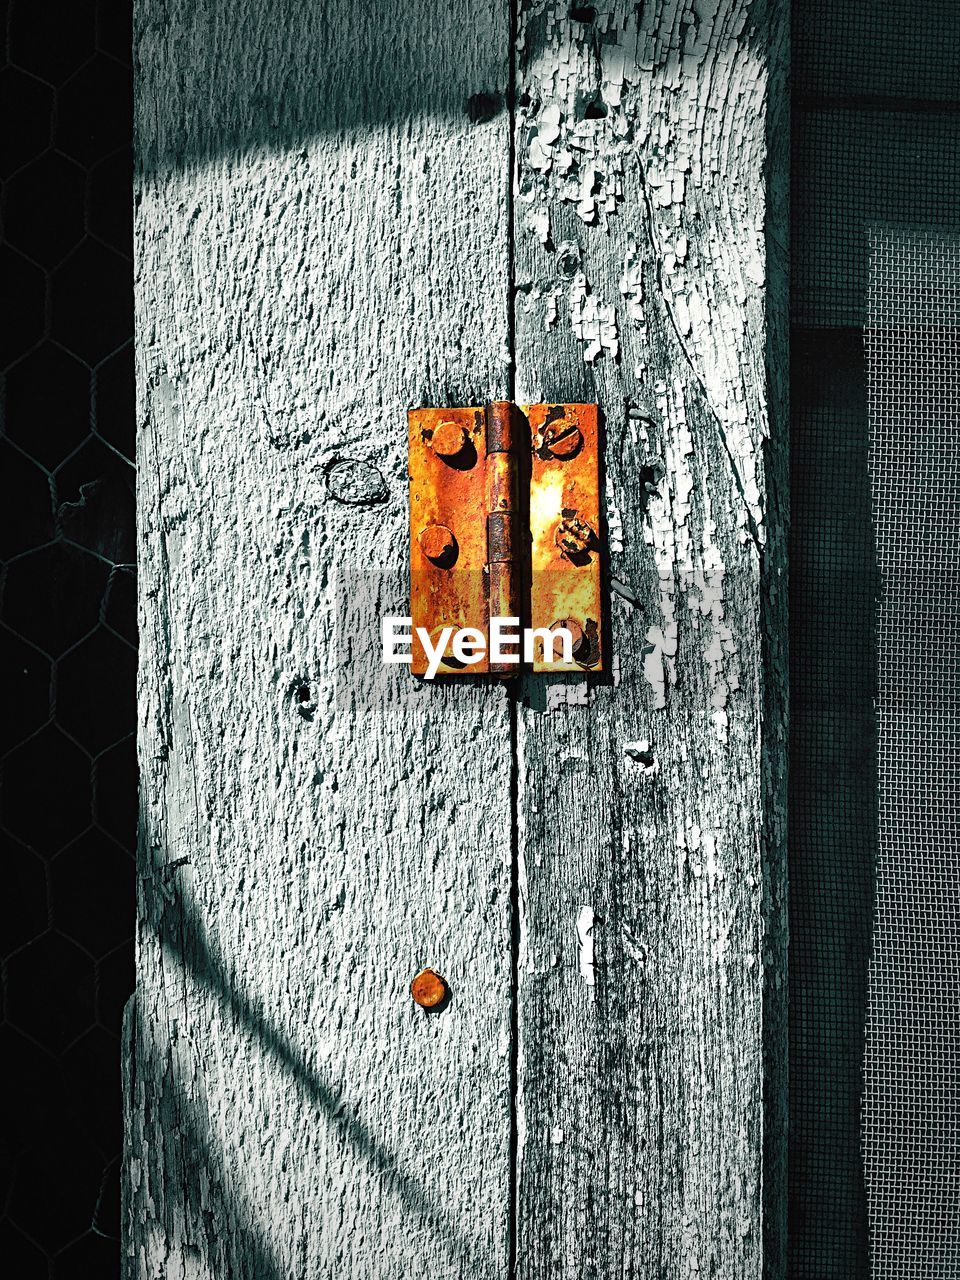 Rusty nail on wooden door